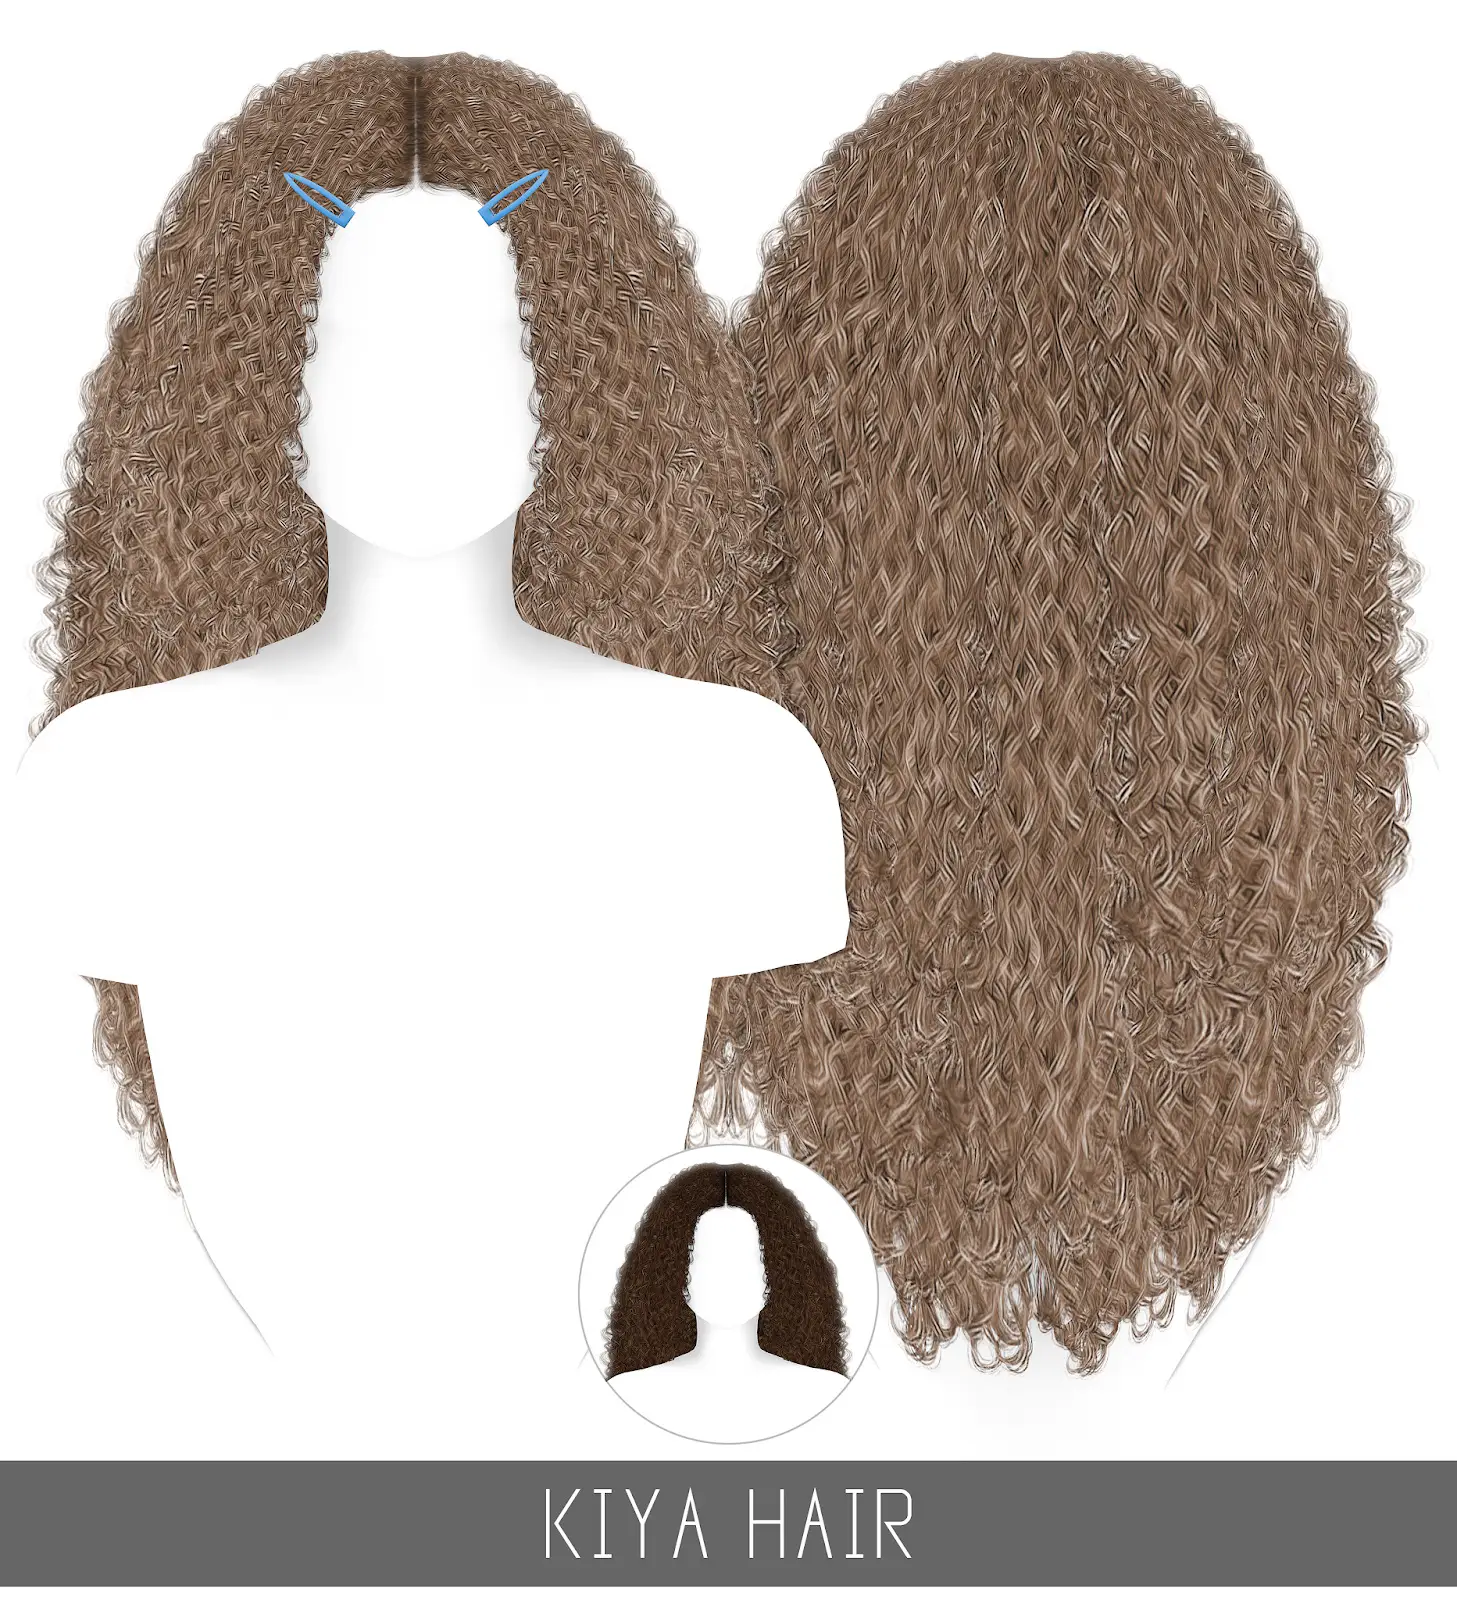 Simpliciaty: Kiya Hair - Sims 4 Hairs